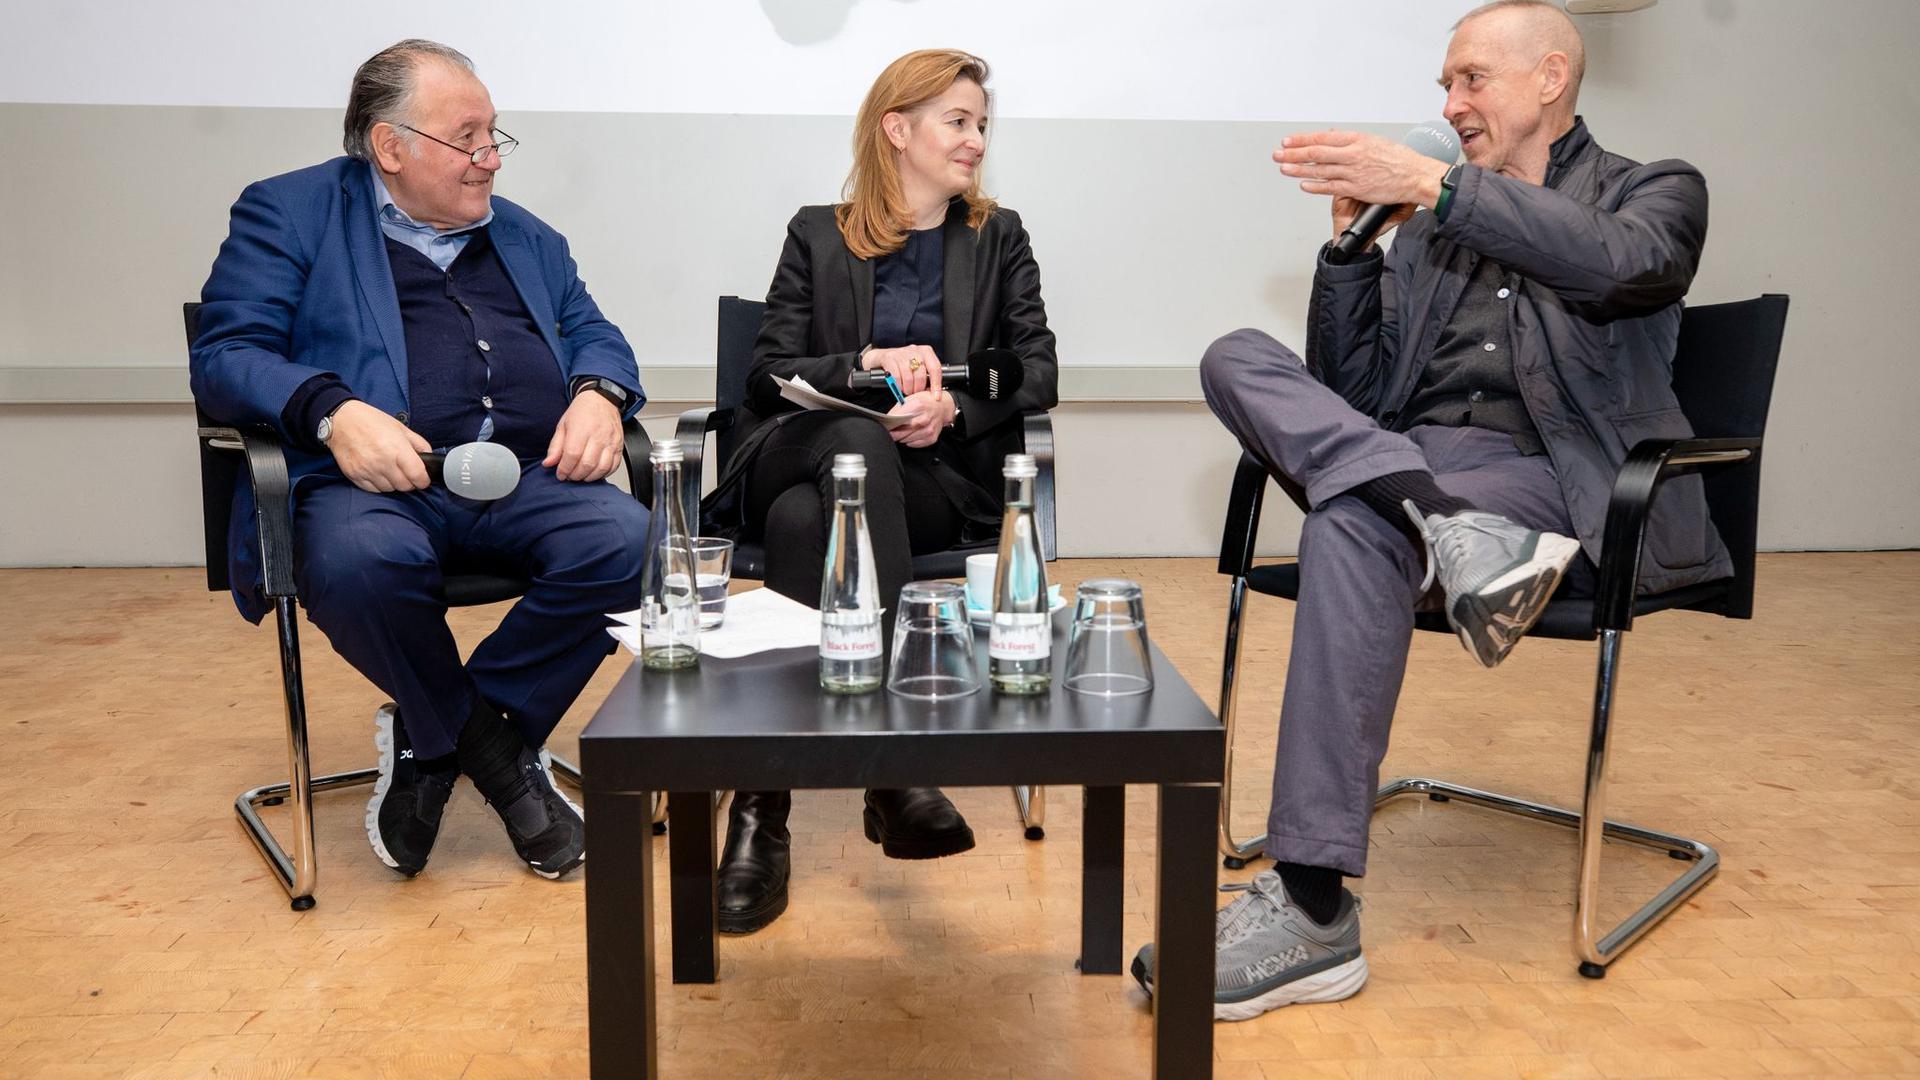 Choreograf William Forsythe (r) spricht bei einem Pressetermin im Karlsruher Zentrum für Kunst und Medien (ZKM) neben Kunsthistorikerin Margit Rosen (M) und ZKM-Leiter Peter Weibel (l) über seine Arbeit.